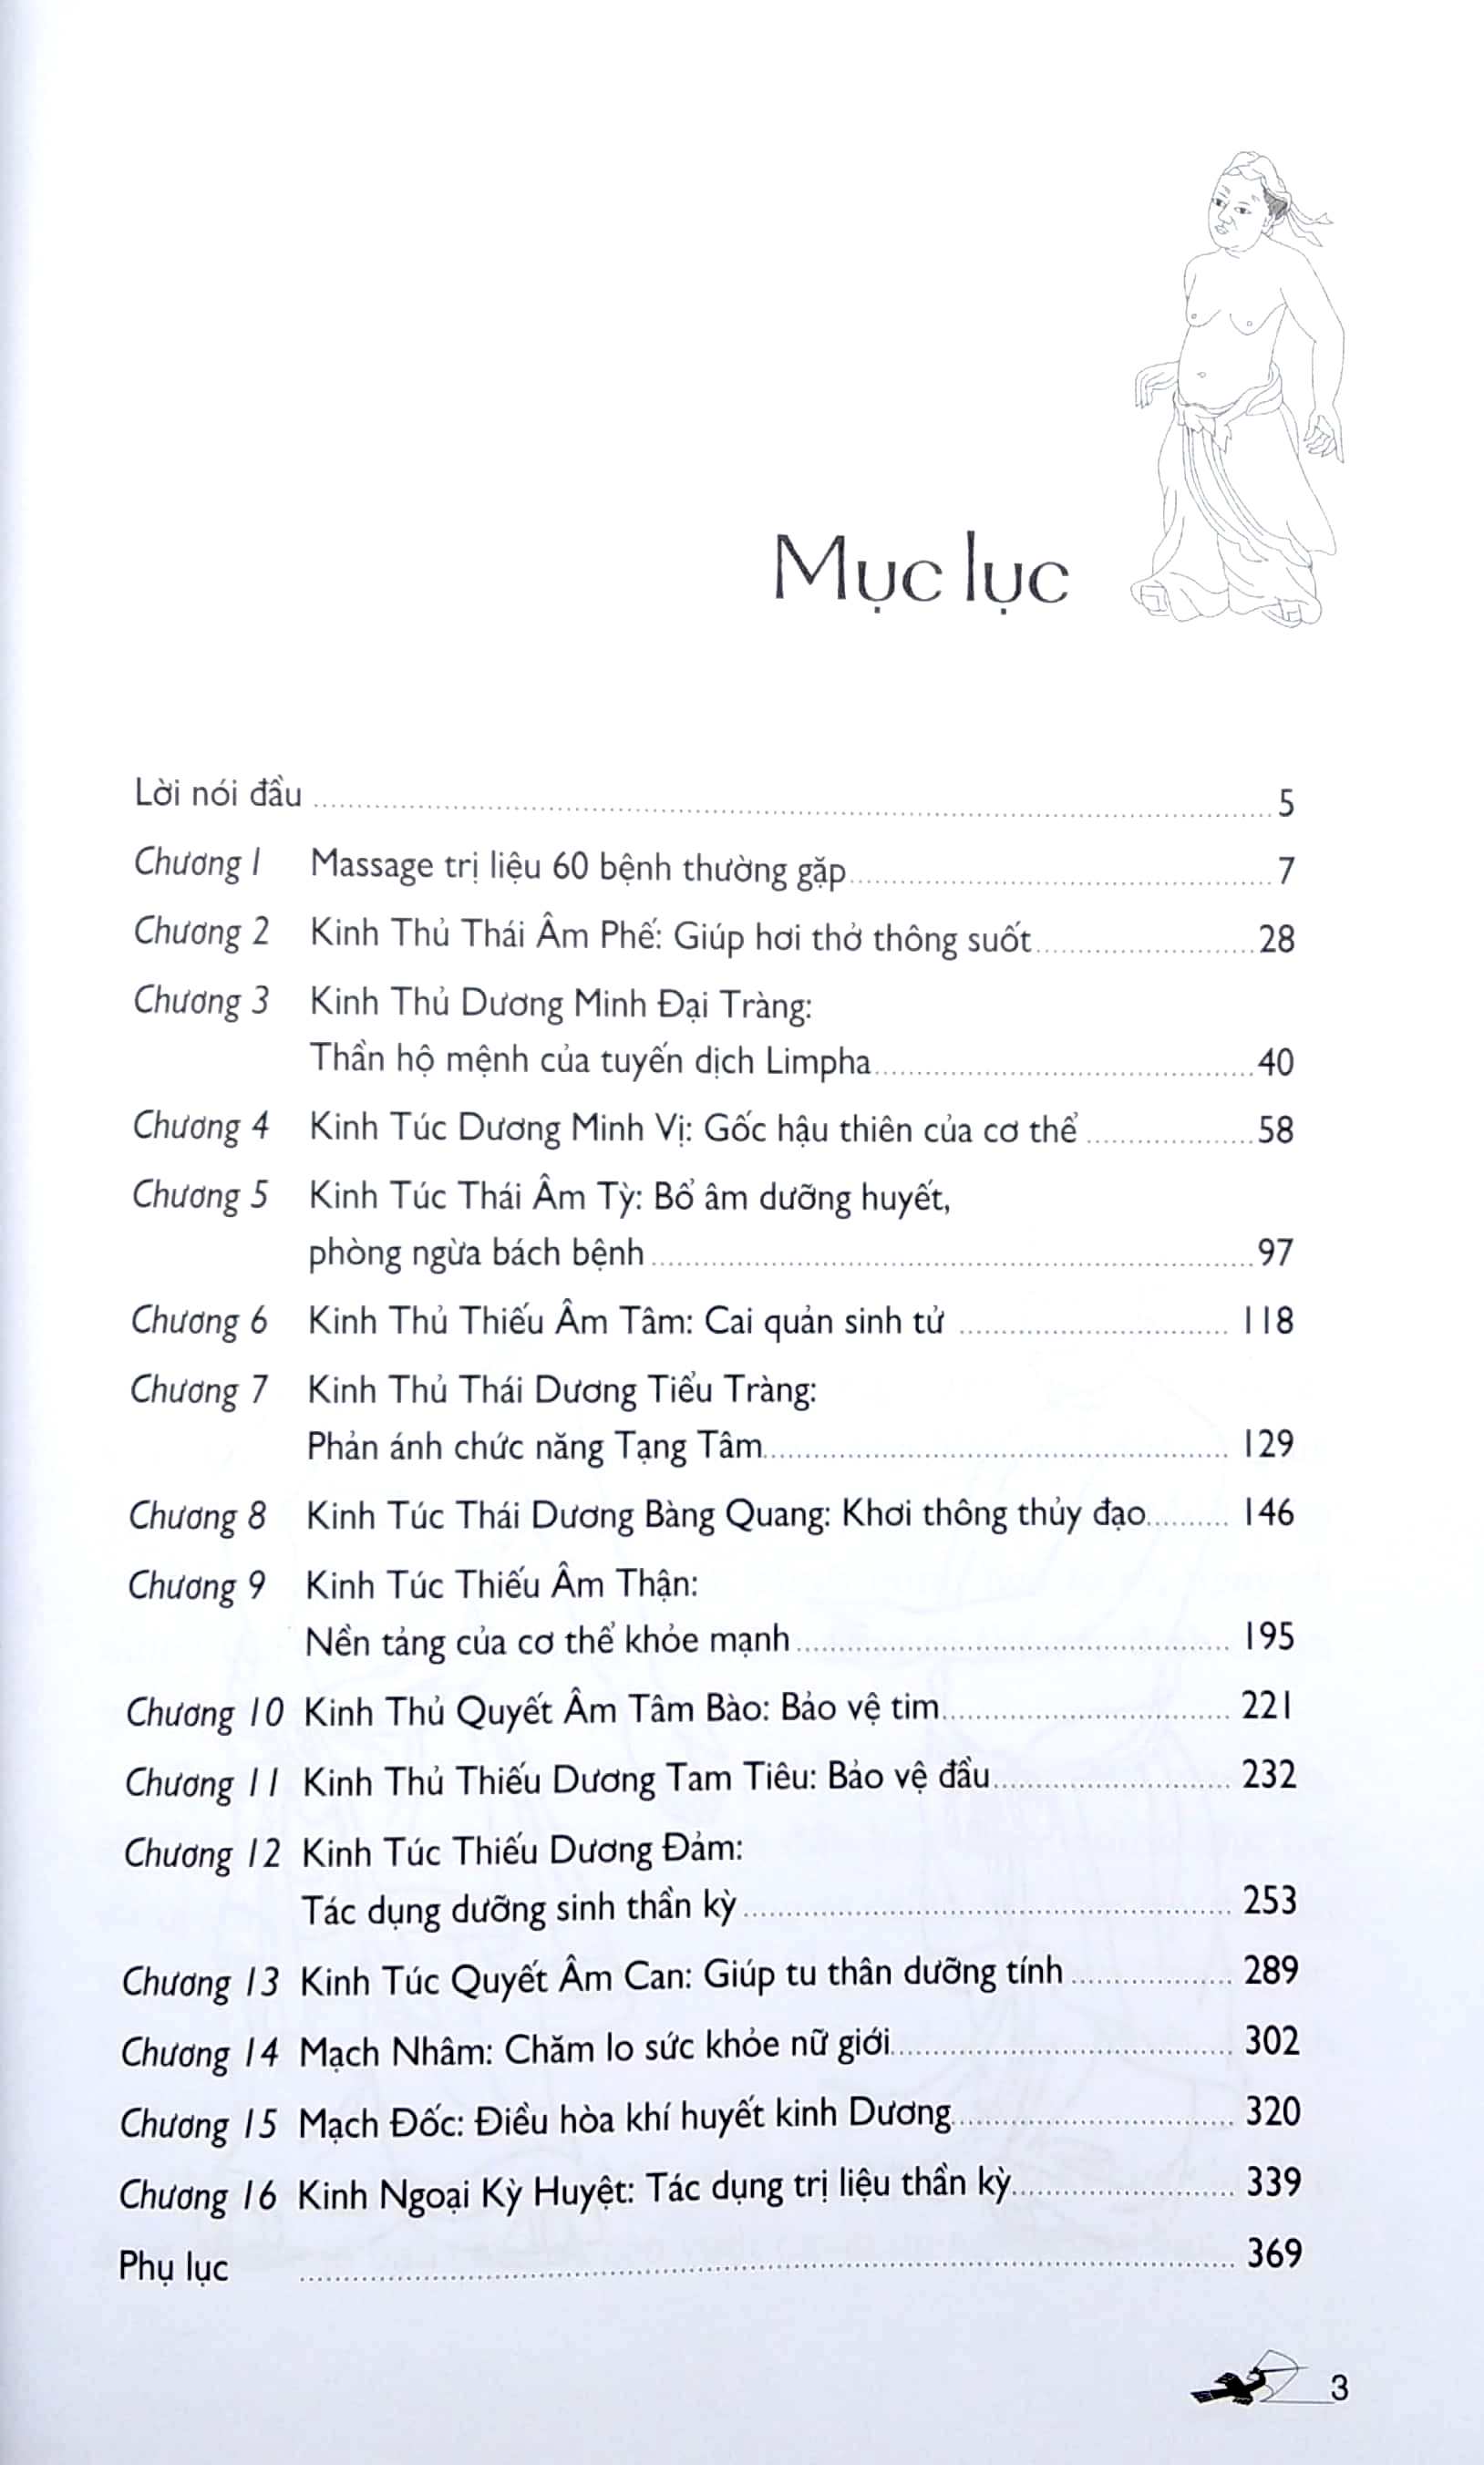 Massage - Kinh Lạc Huyệt Vị Toàn Thư PDF